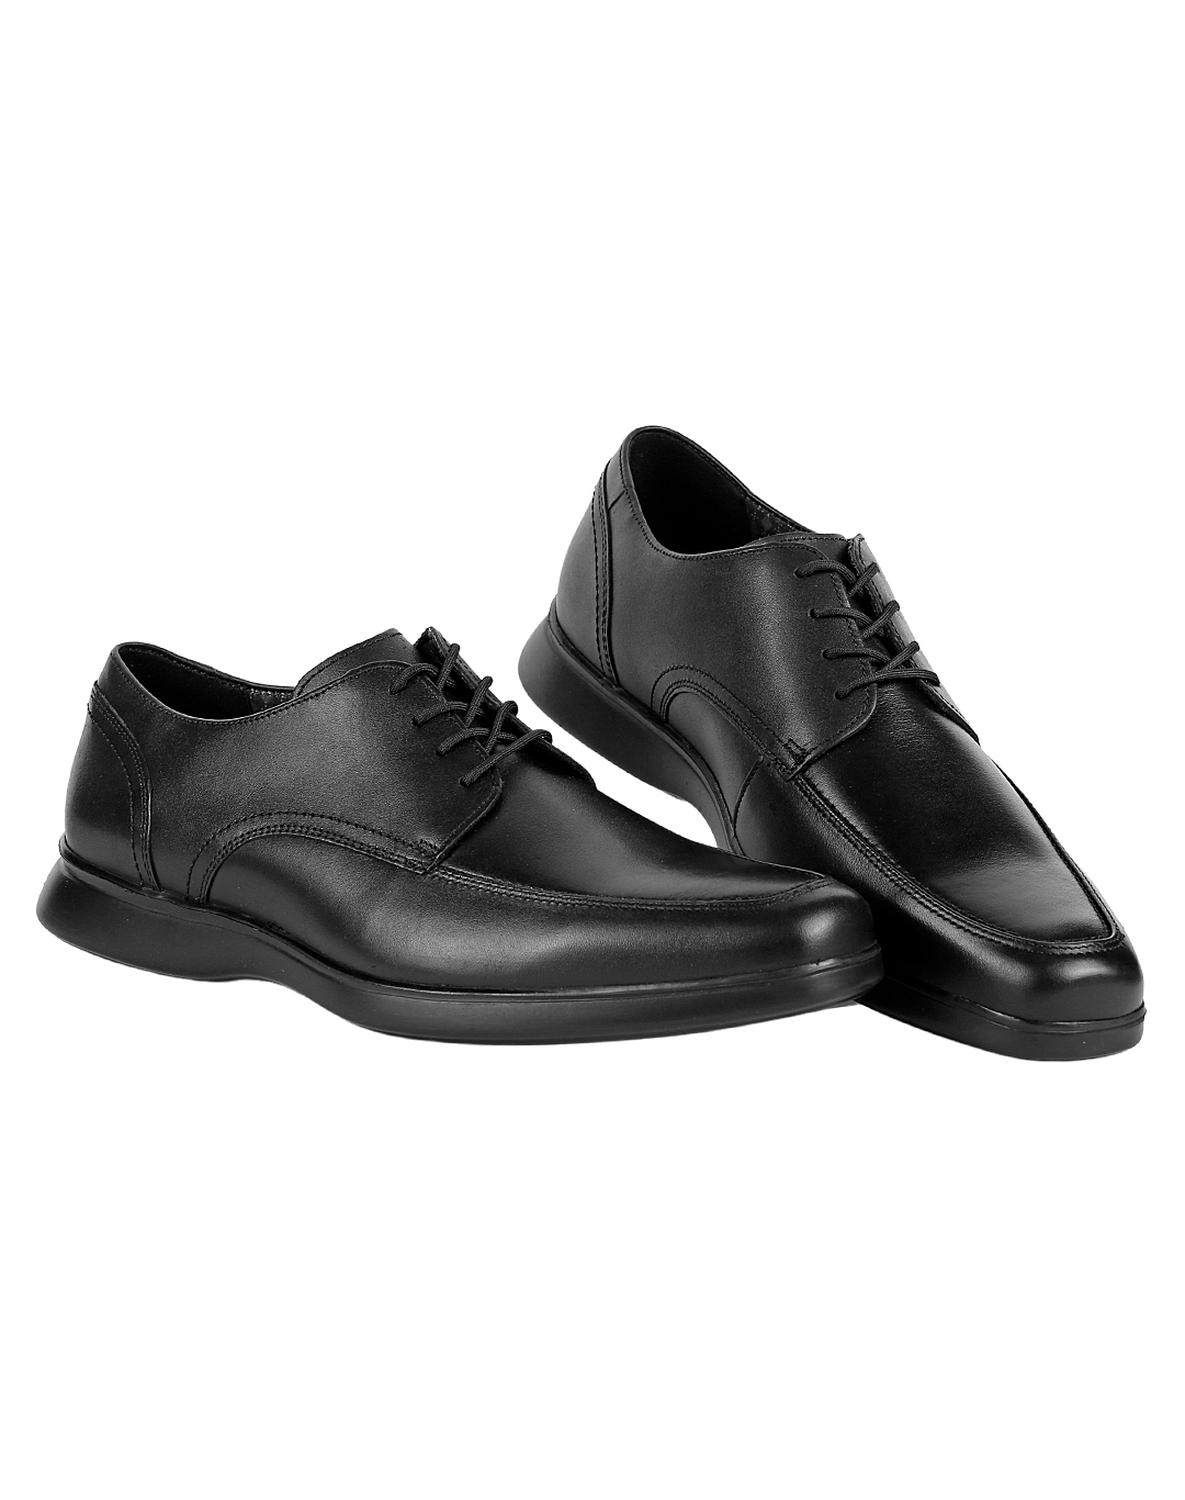 Zapato Vestir Oxford Hombre Negro Piel Flexi 02503826 – SALVAJE